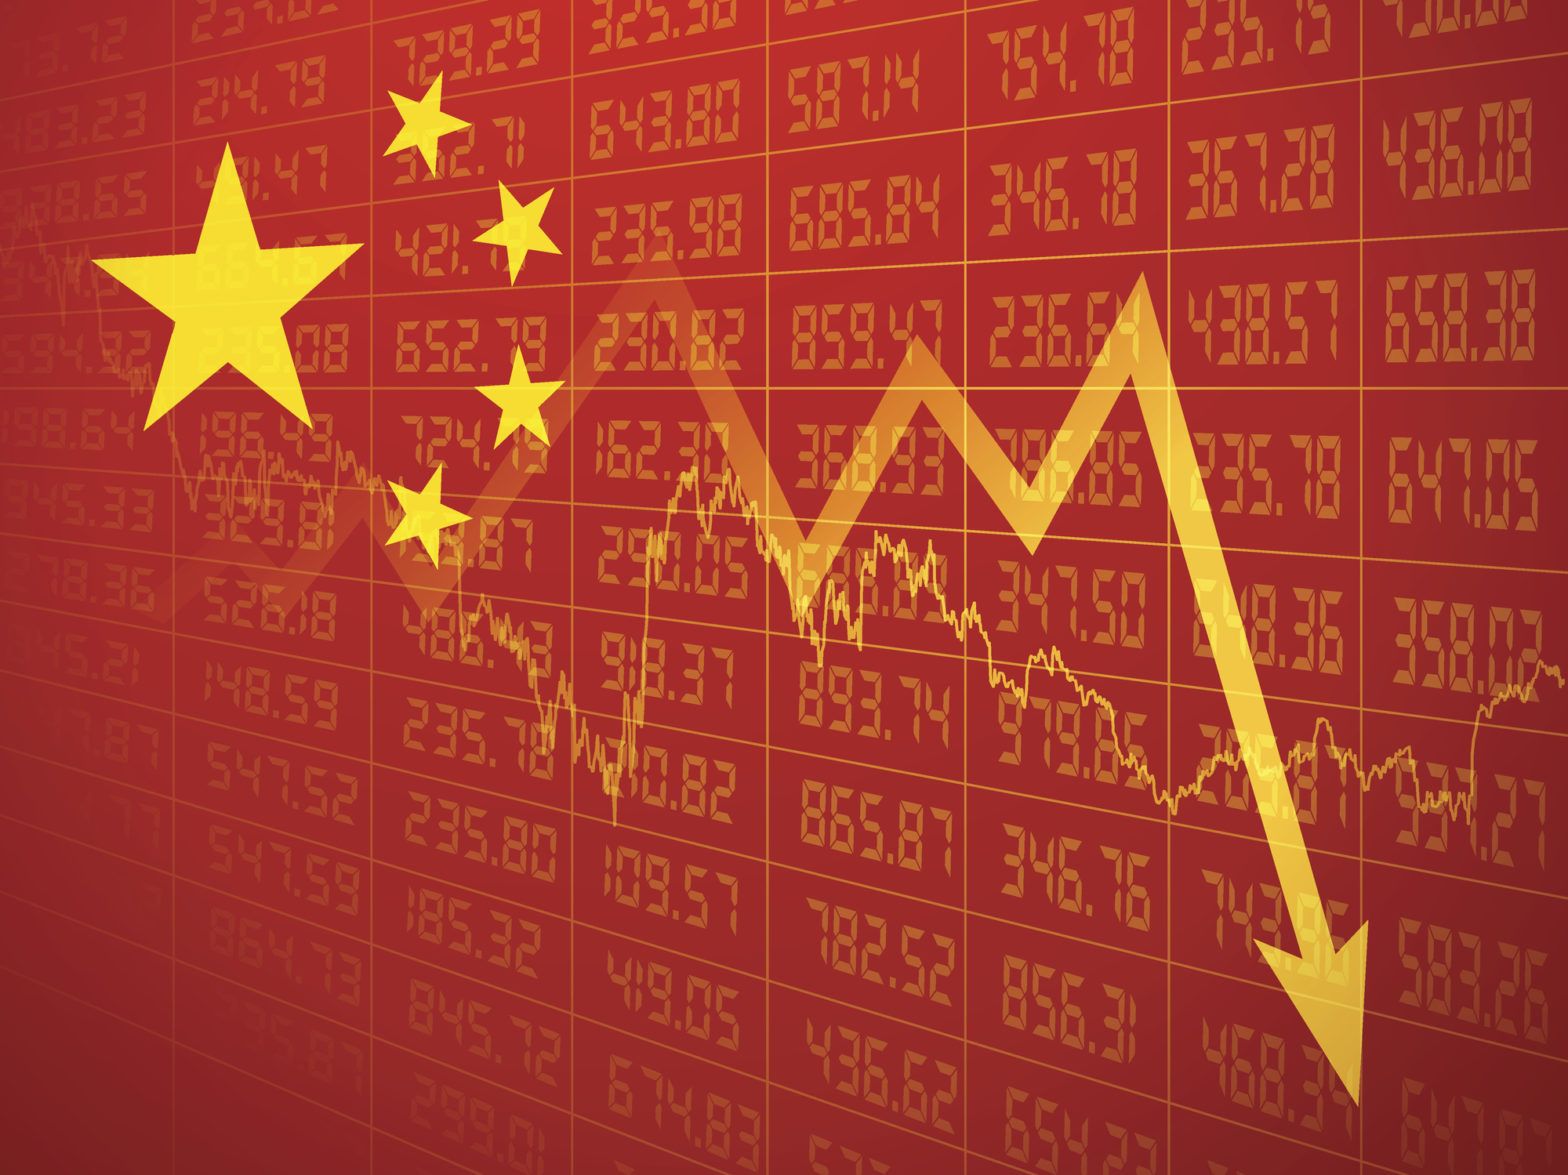 Chinese equity investors take stock of weak data